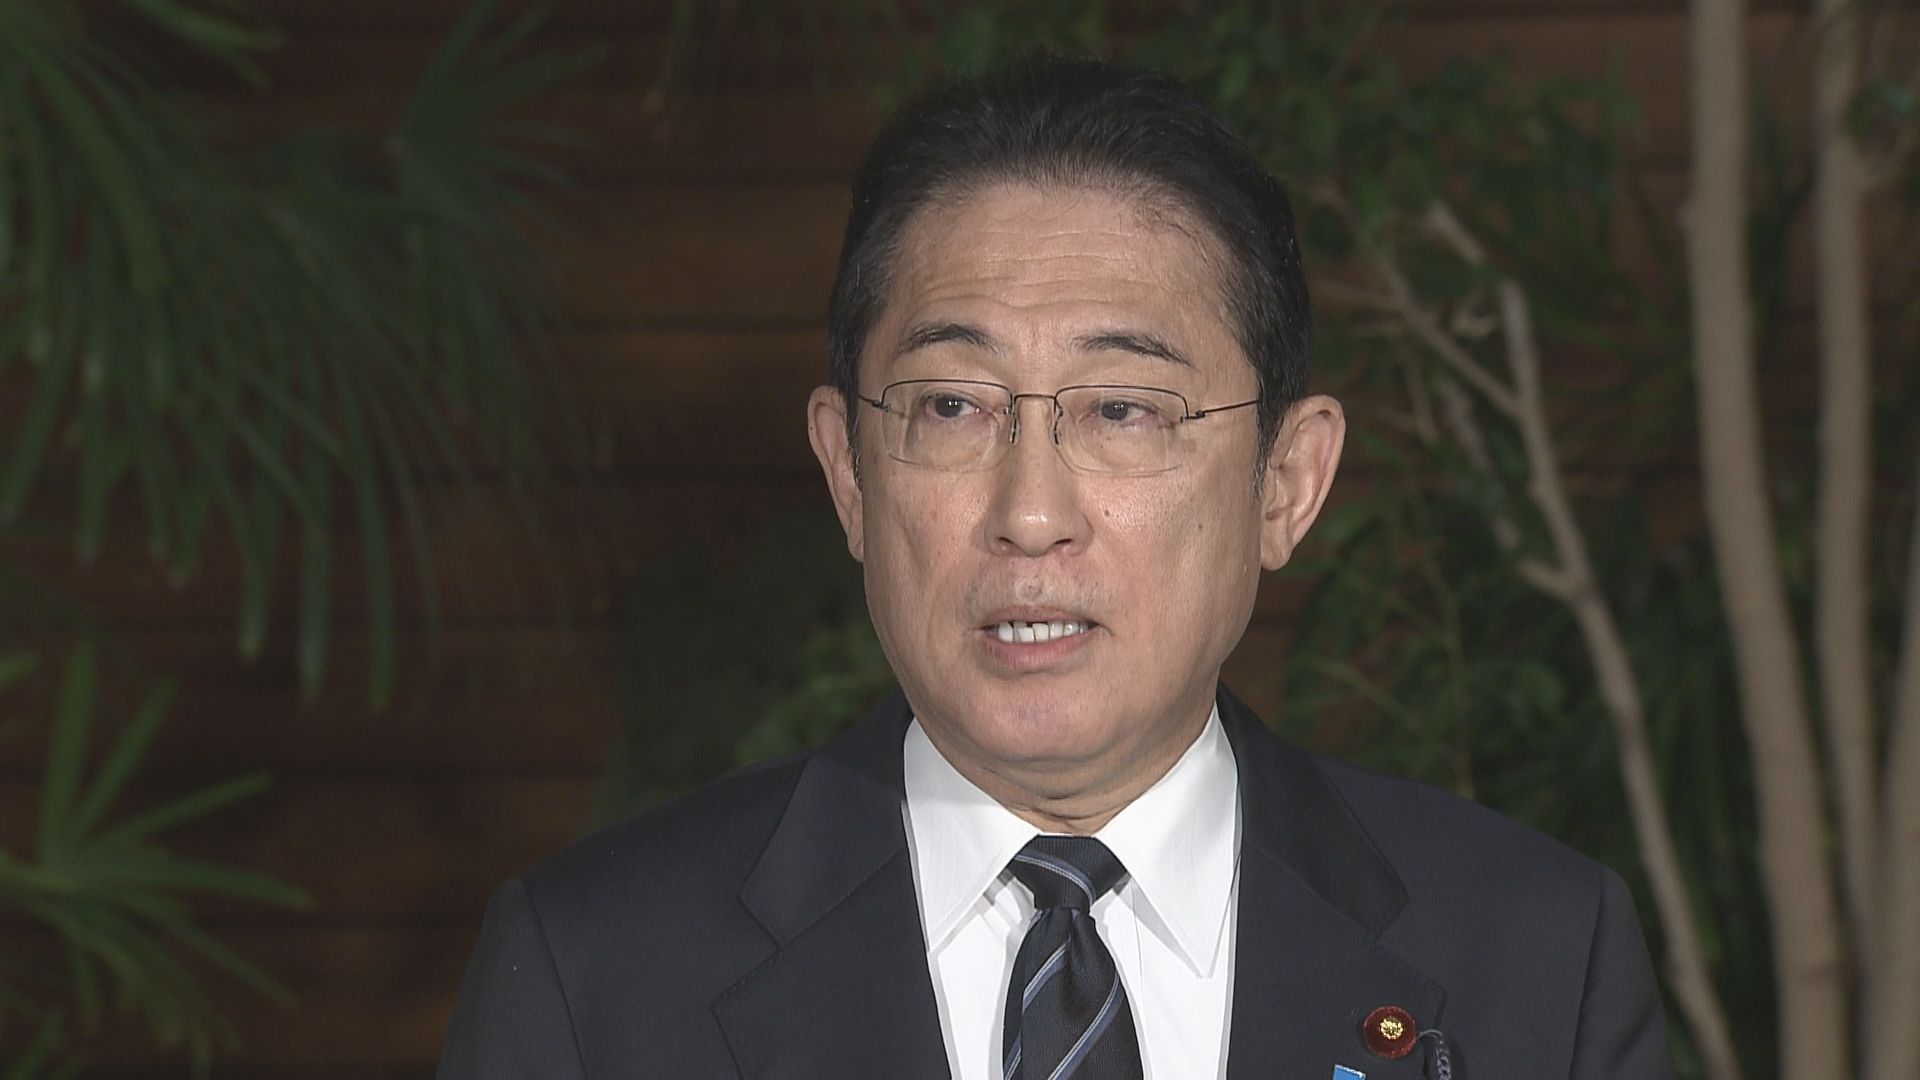 【速報】岸田総理が派閥からの離脱を表明